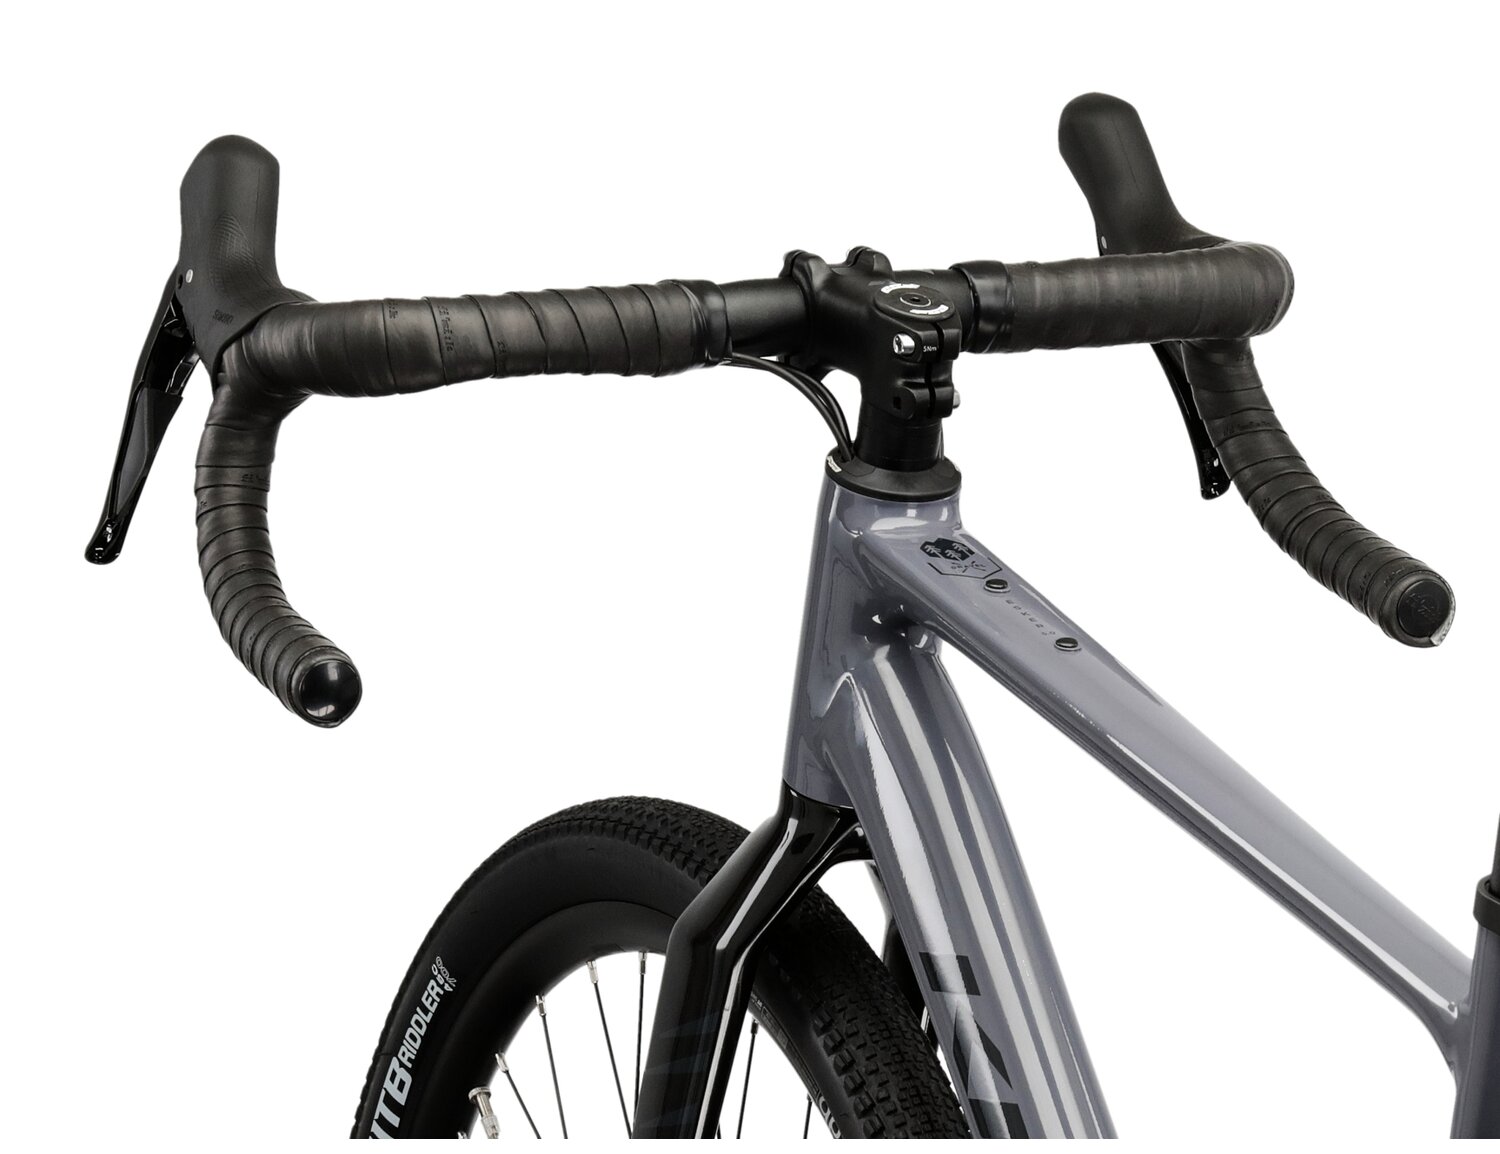  Rama aluminiowa nowej generacji gen2, kierownica, wideleca oraz opony WTB Riddler w rowerze gravelowym Kross Esker 5.0 